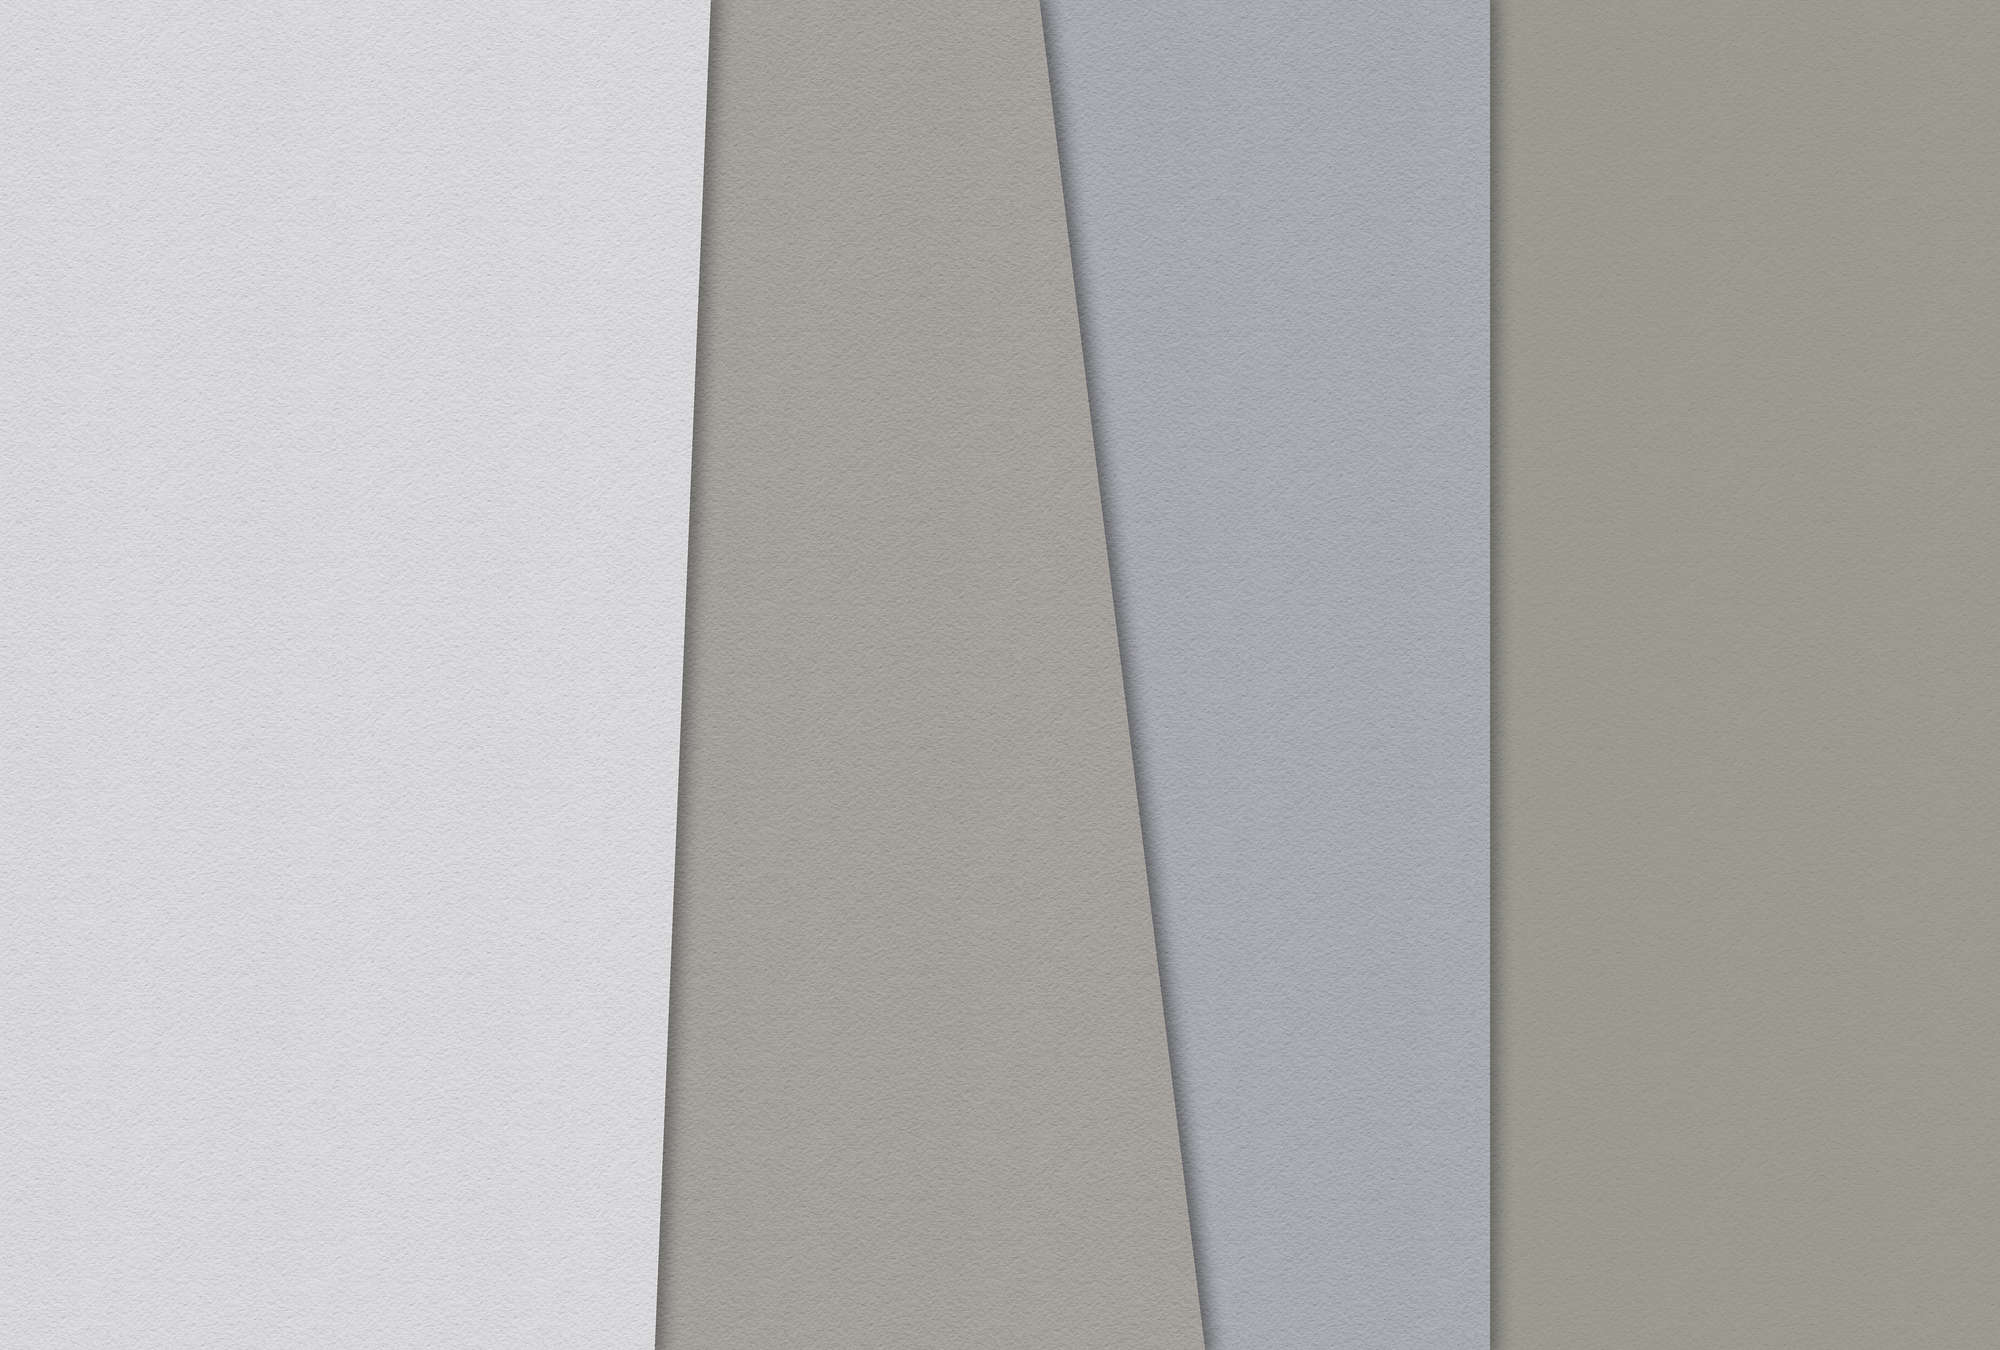             Papel estratificado 4 - Mural minimalista de colores en estructura de papel hecho a mano - Azul, Crema | Vellón liso Premium
        